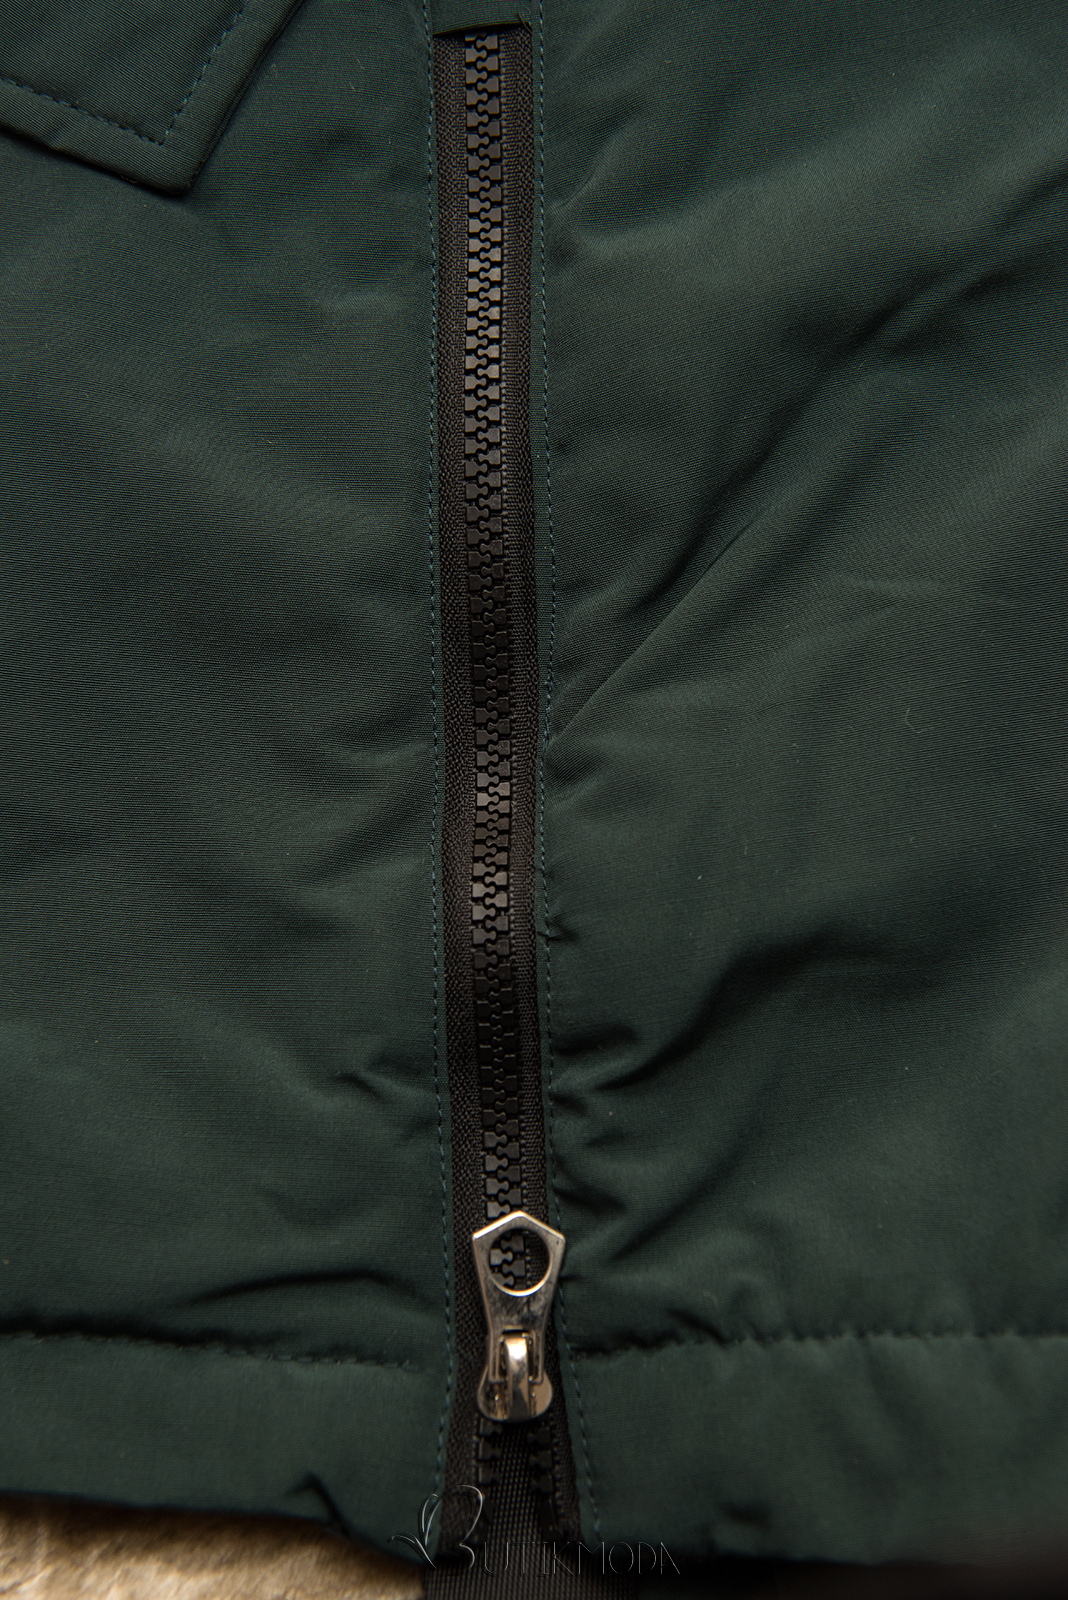 Sötétzöld színű téli kabát magas gallérral